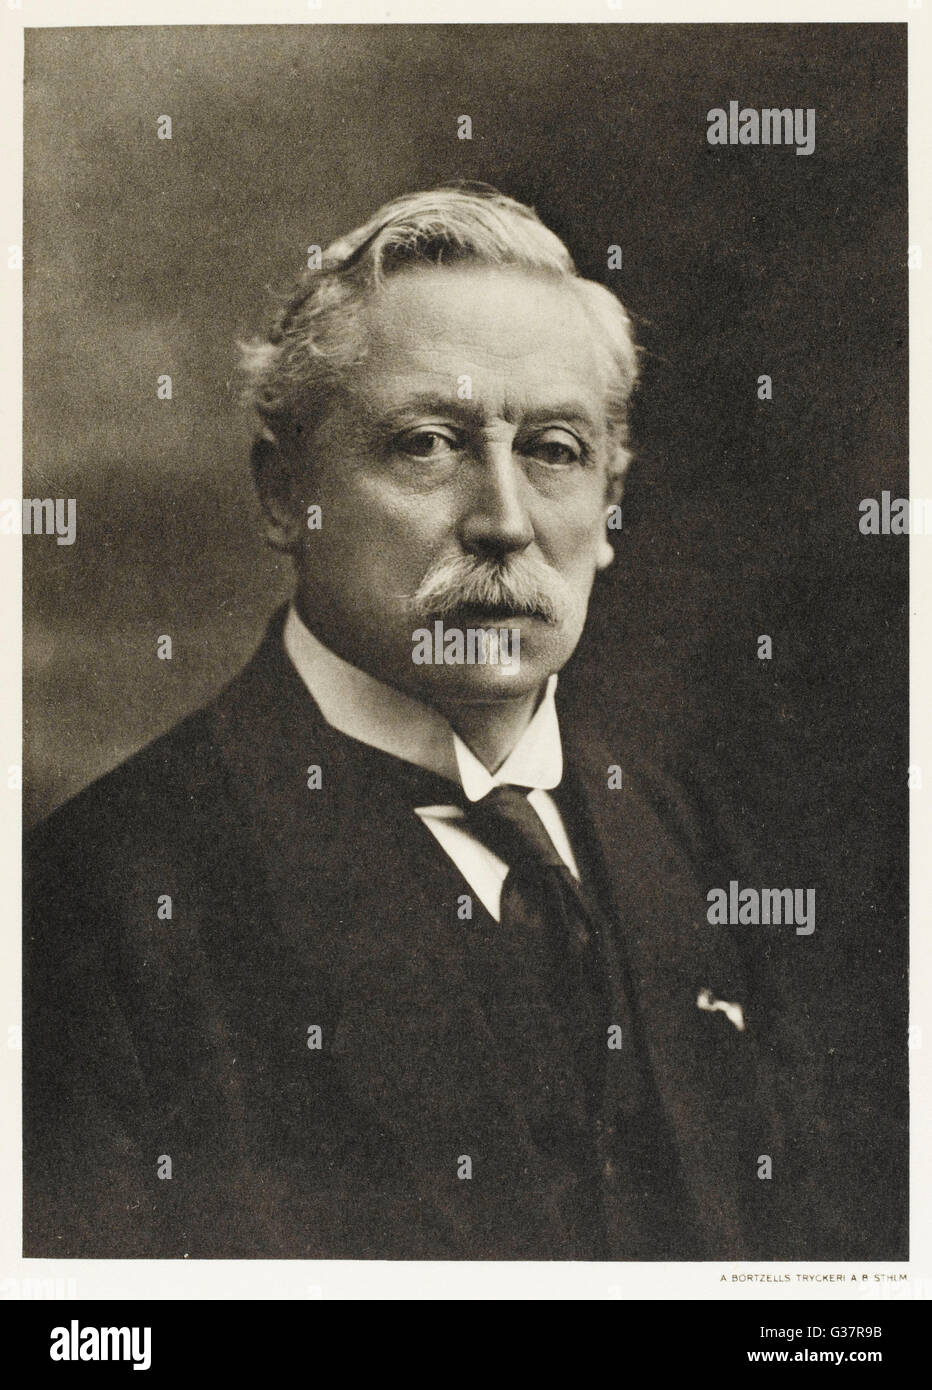 CHRISTIAAN EIJKMAN scienziato olandese. Data: 1858 - 1930 Foto Stock